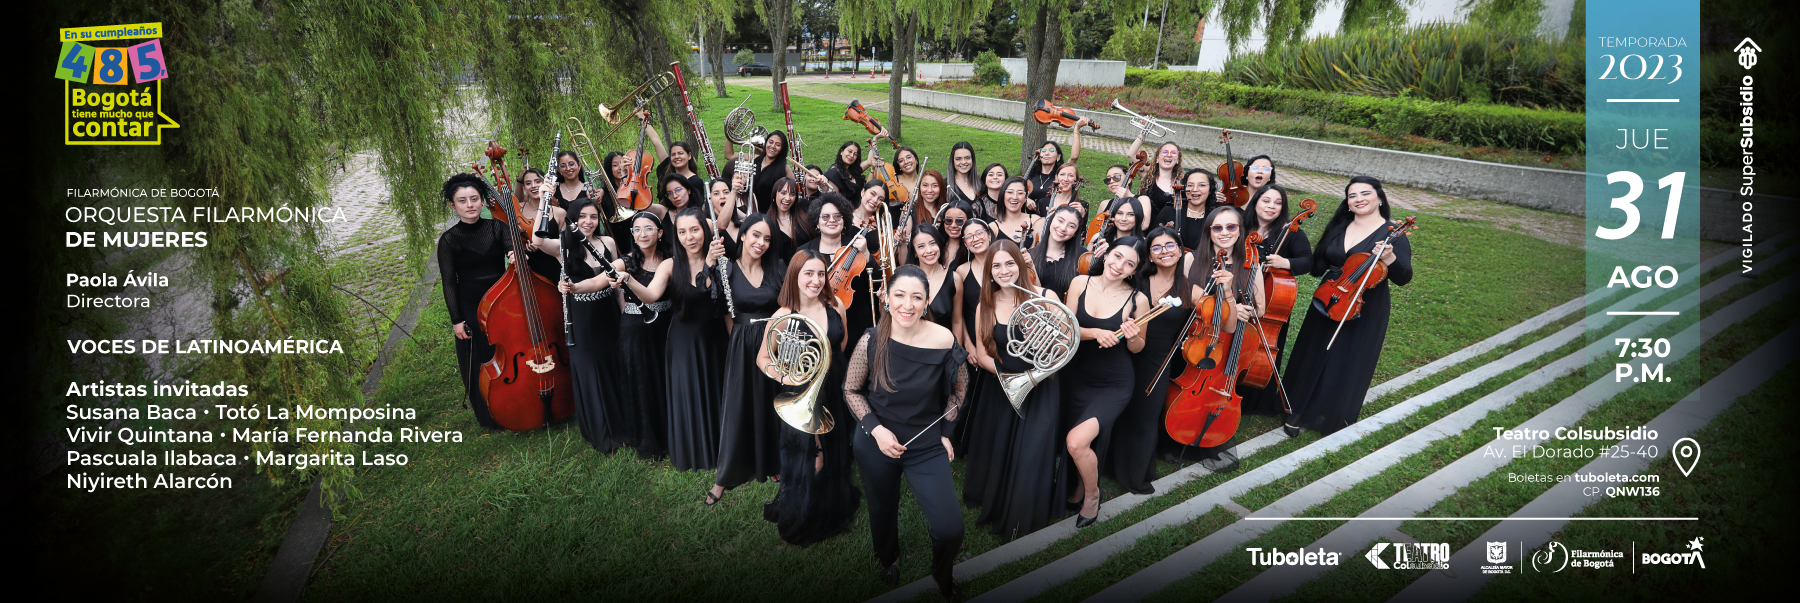 Voces de Latinoamerica con la Orquesta Filarmónica de Mujeres